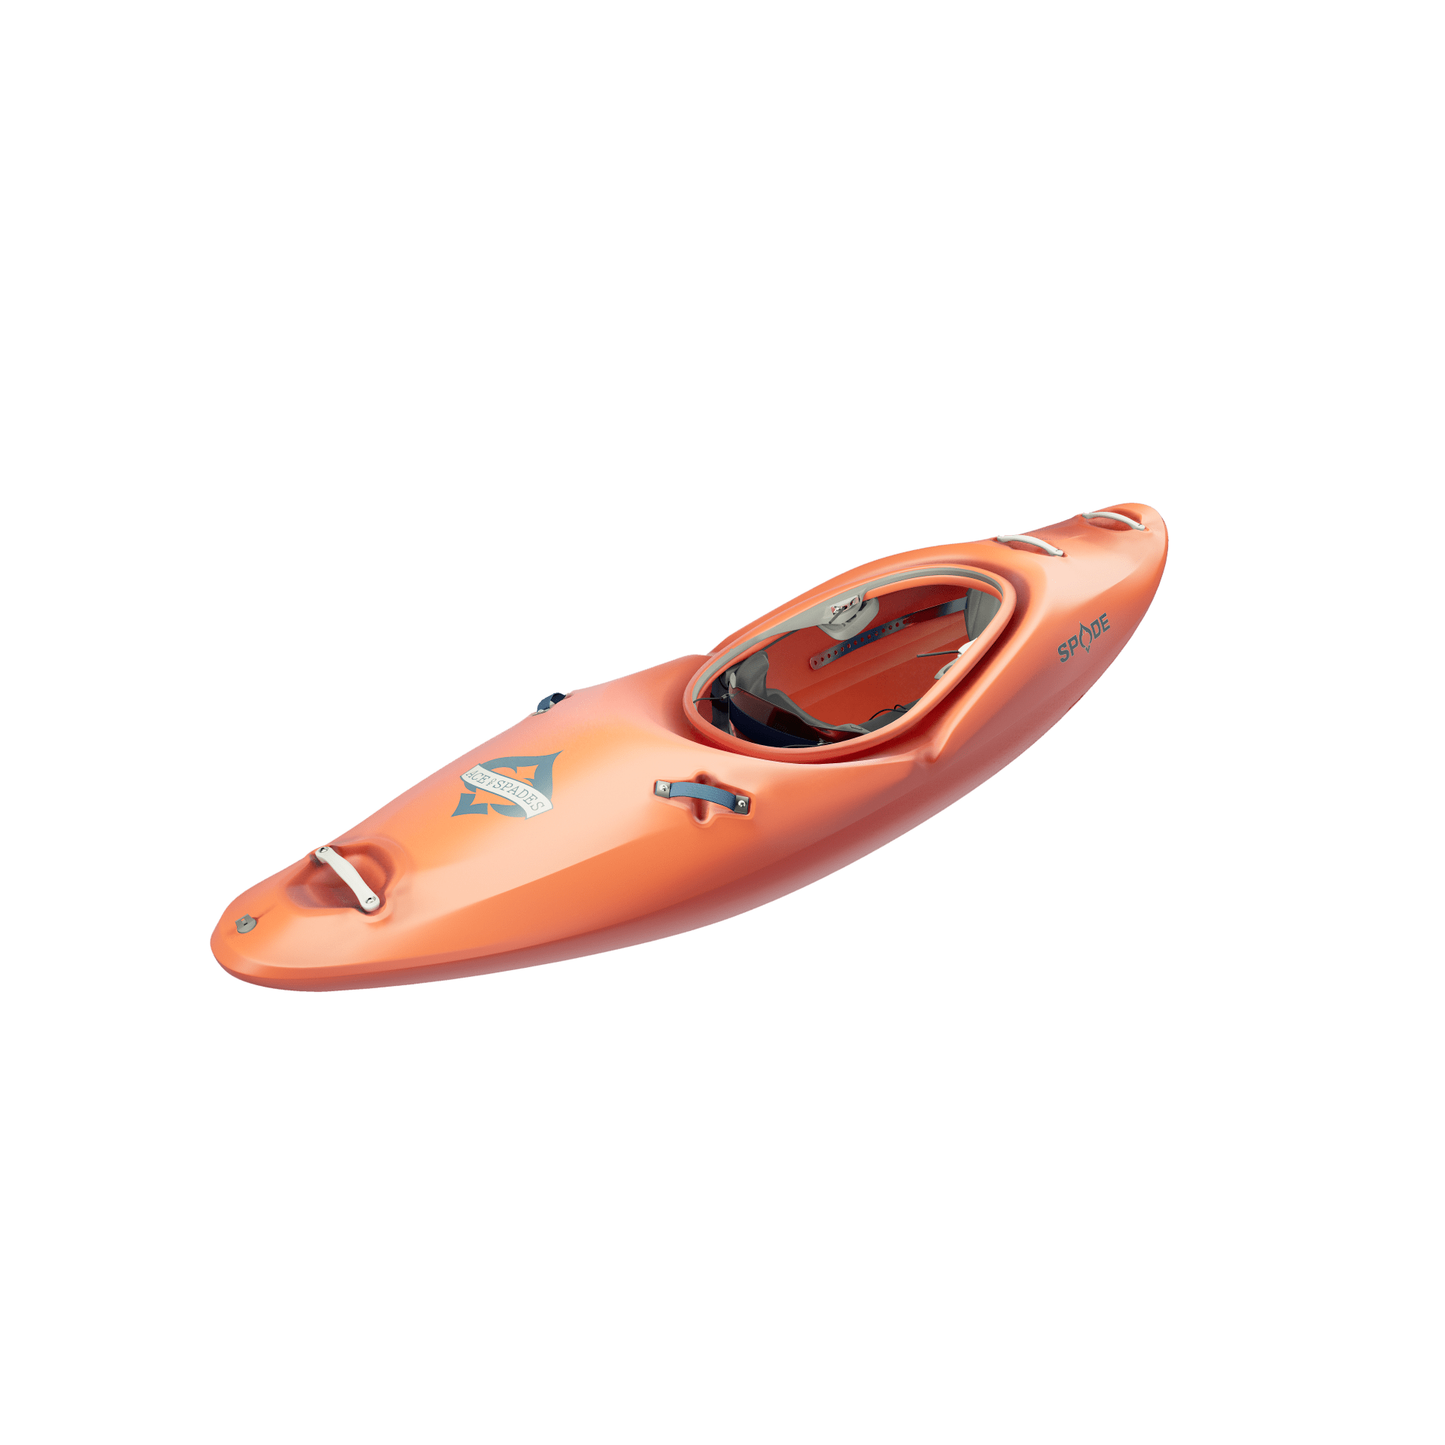 Ace of Spades White Water Kayak - Spade Kayaks